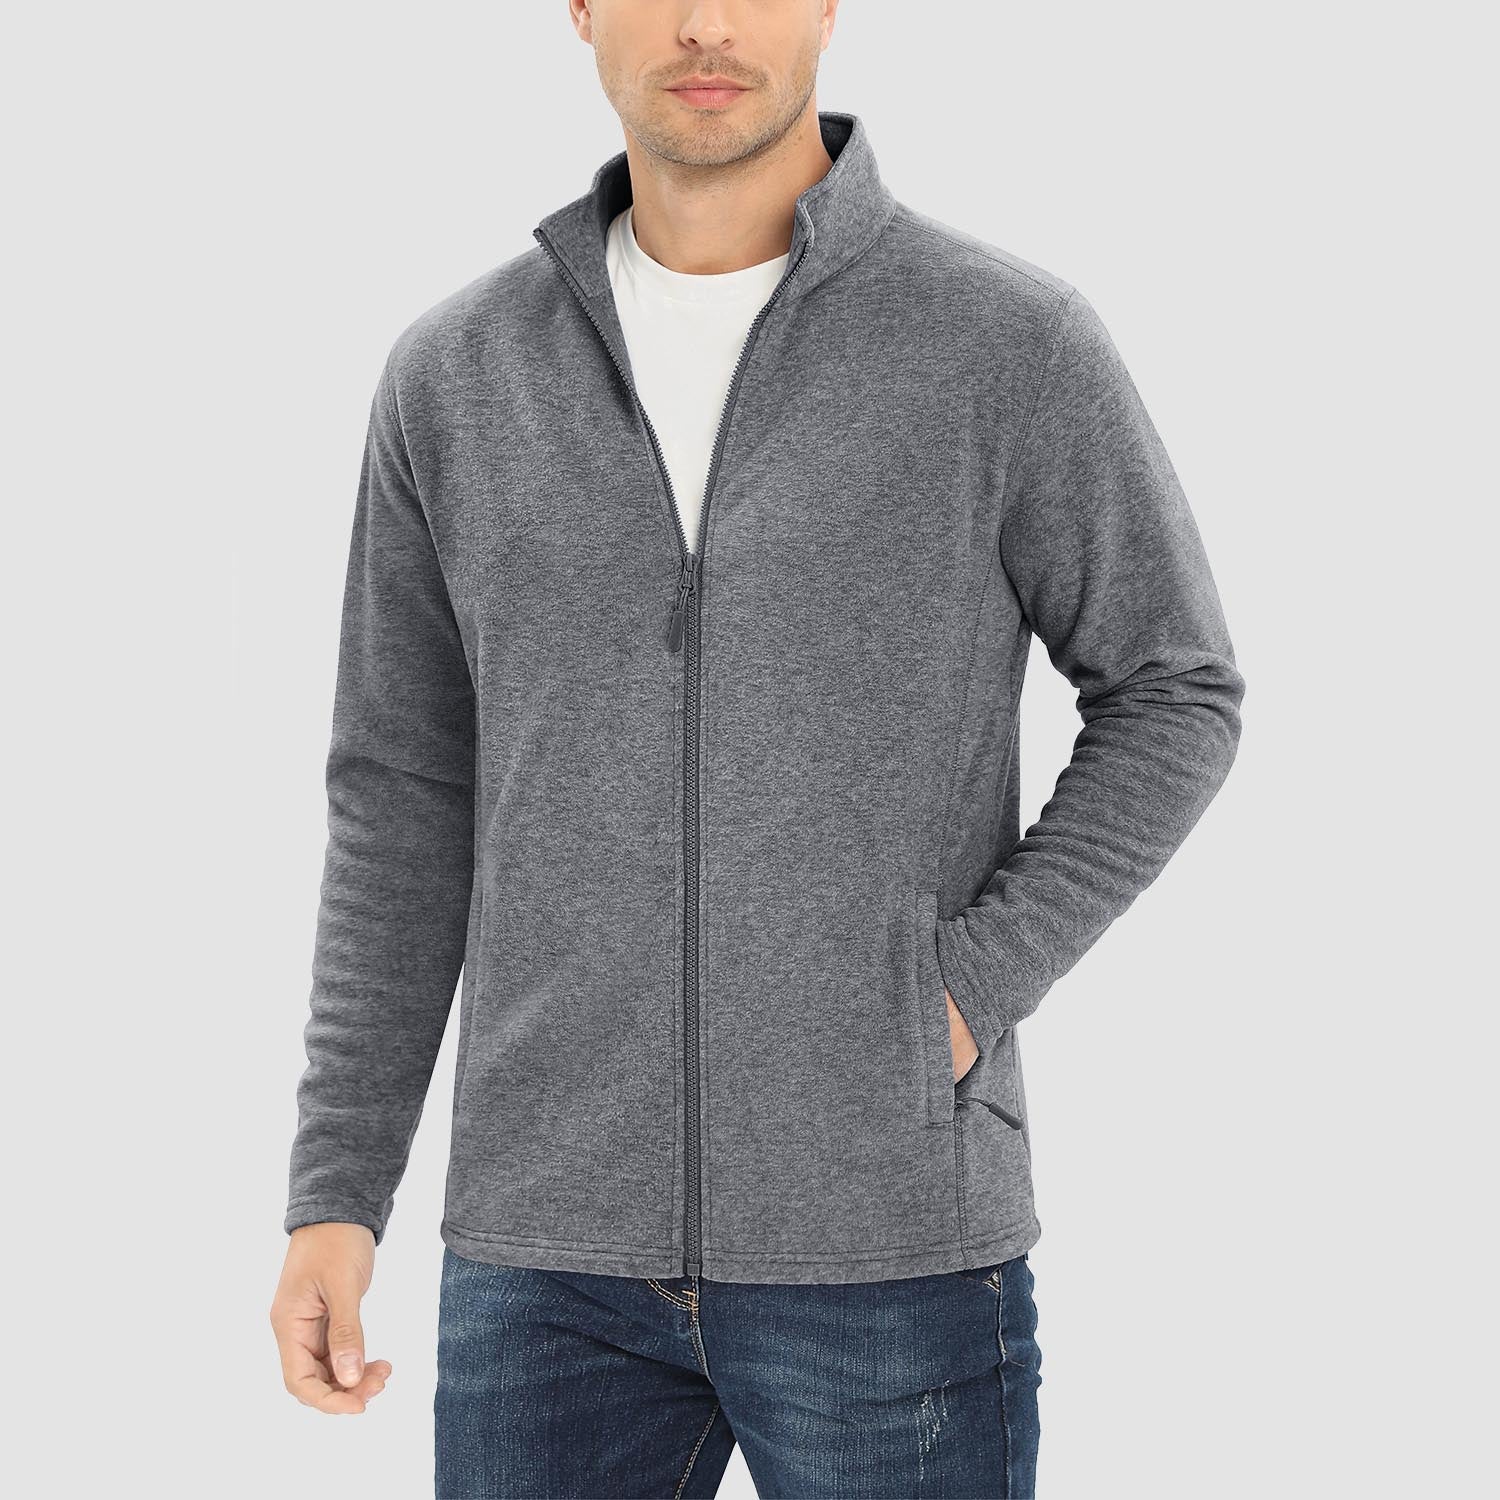 Men's Fleece Jacket Zip Up Stand Collar Coat